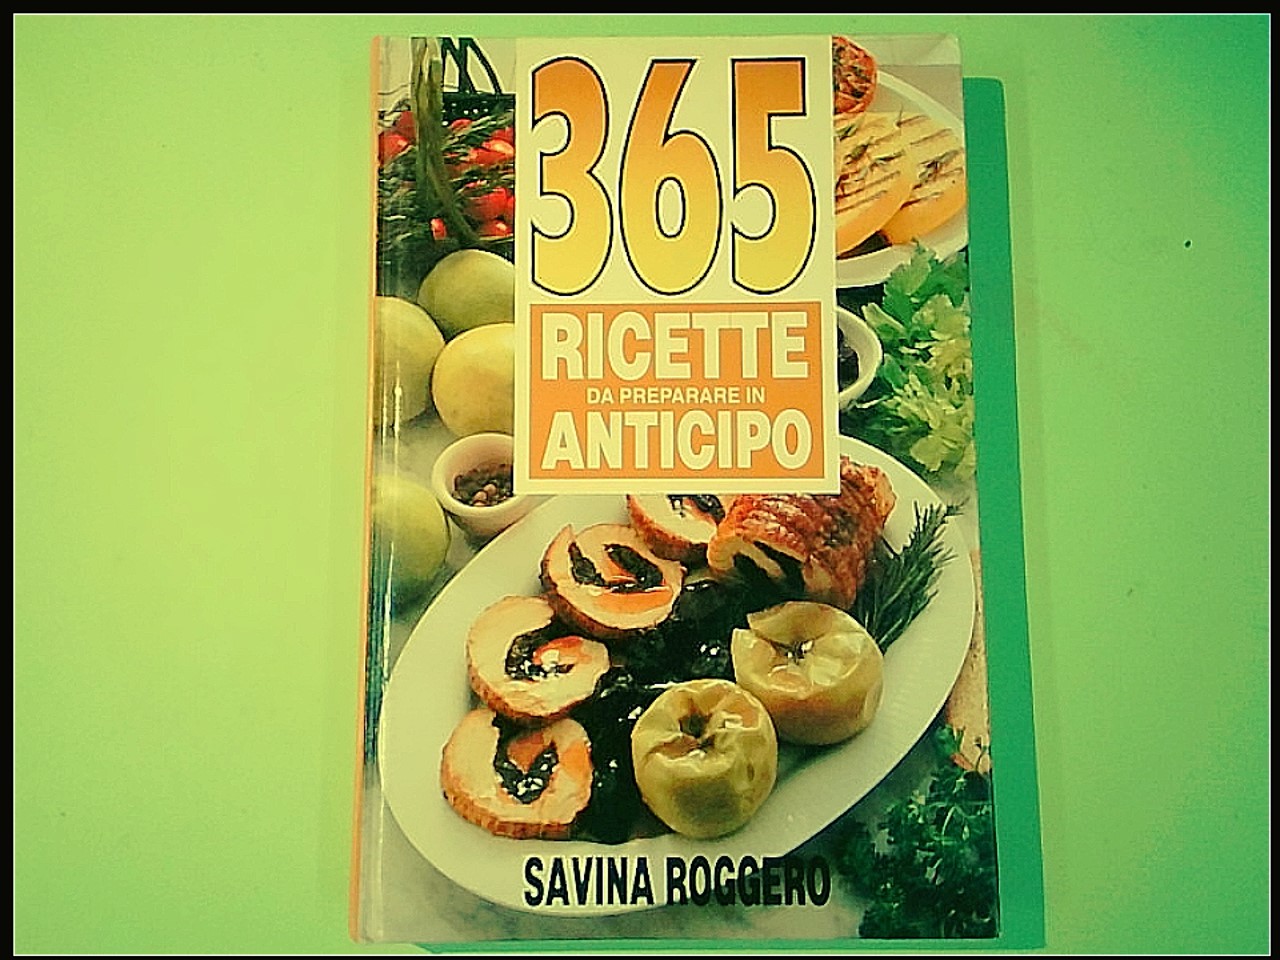 365 RICETTE DA PREPARARE IN ANTICIPO SAVINA ROGGERO CDE 1991